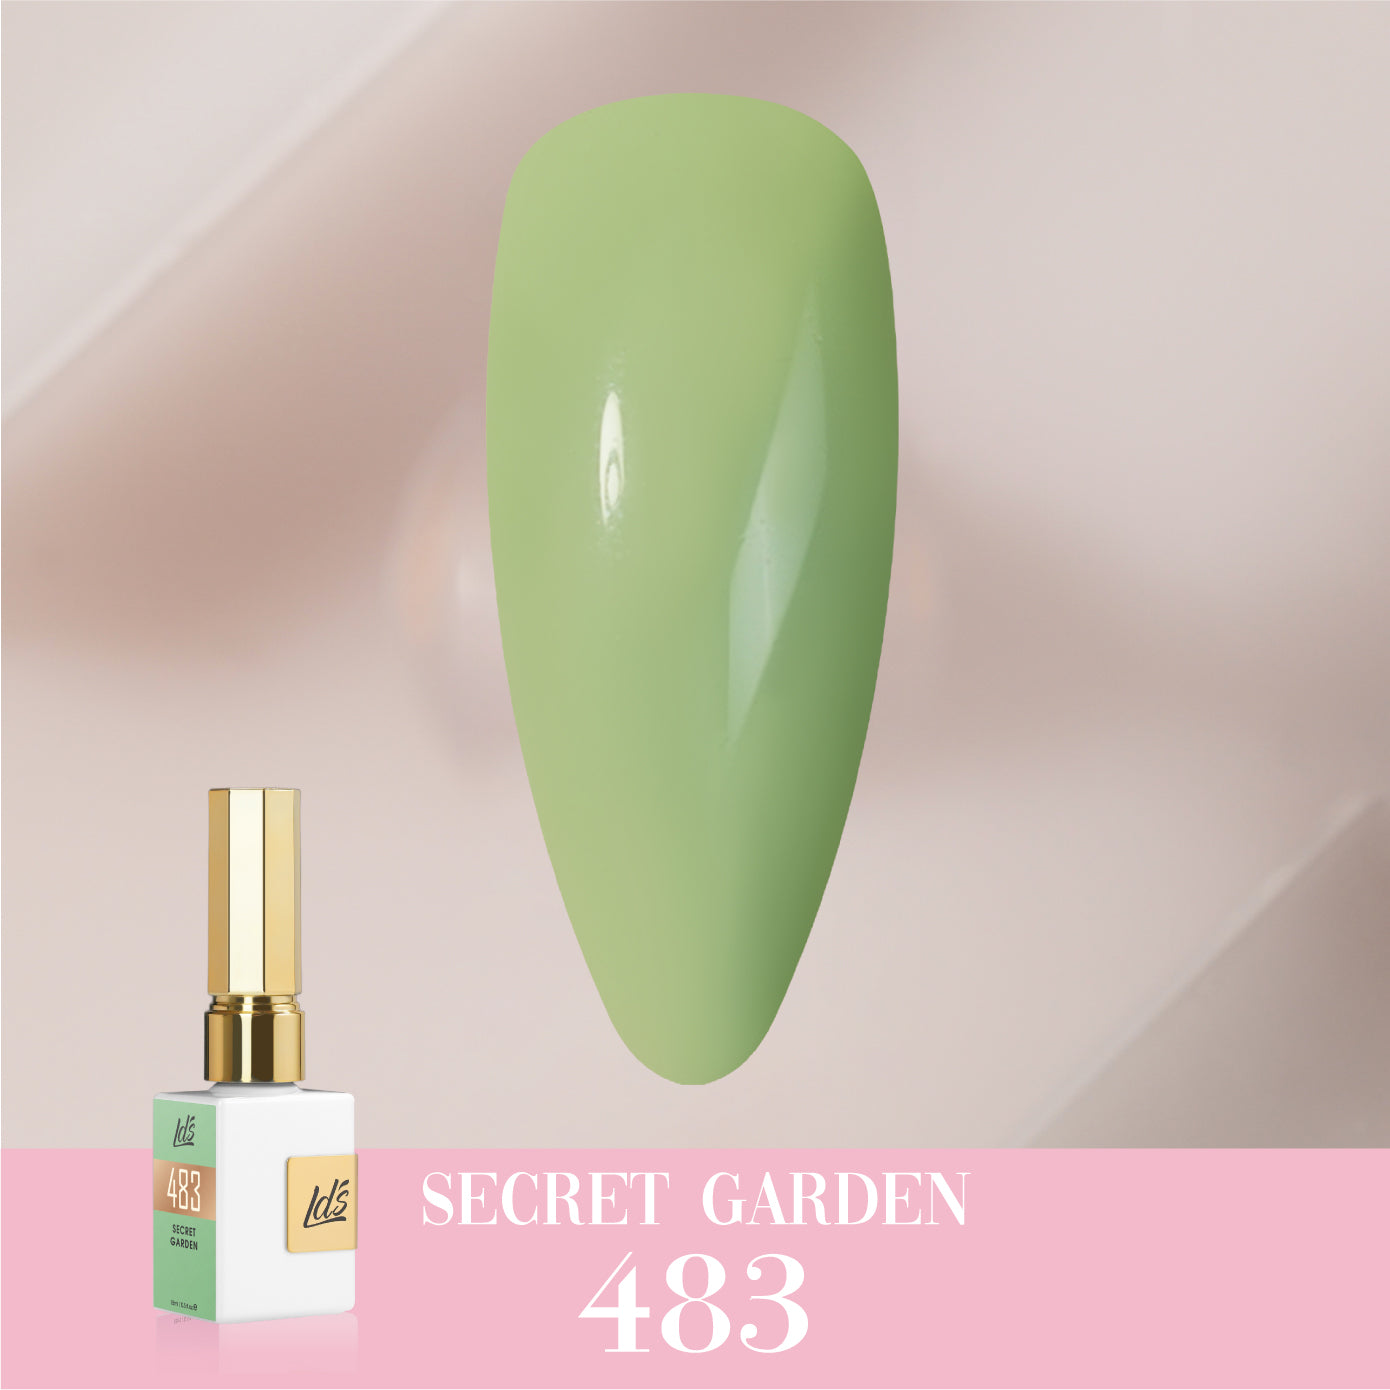 LDS Color Craze Collection - 483 Secret Garden - Gel Polish 0.5oz